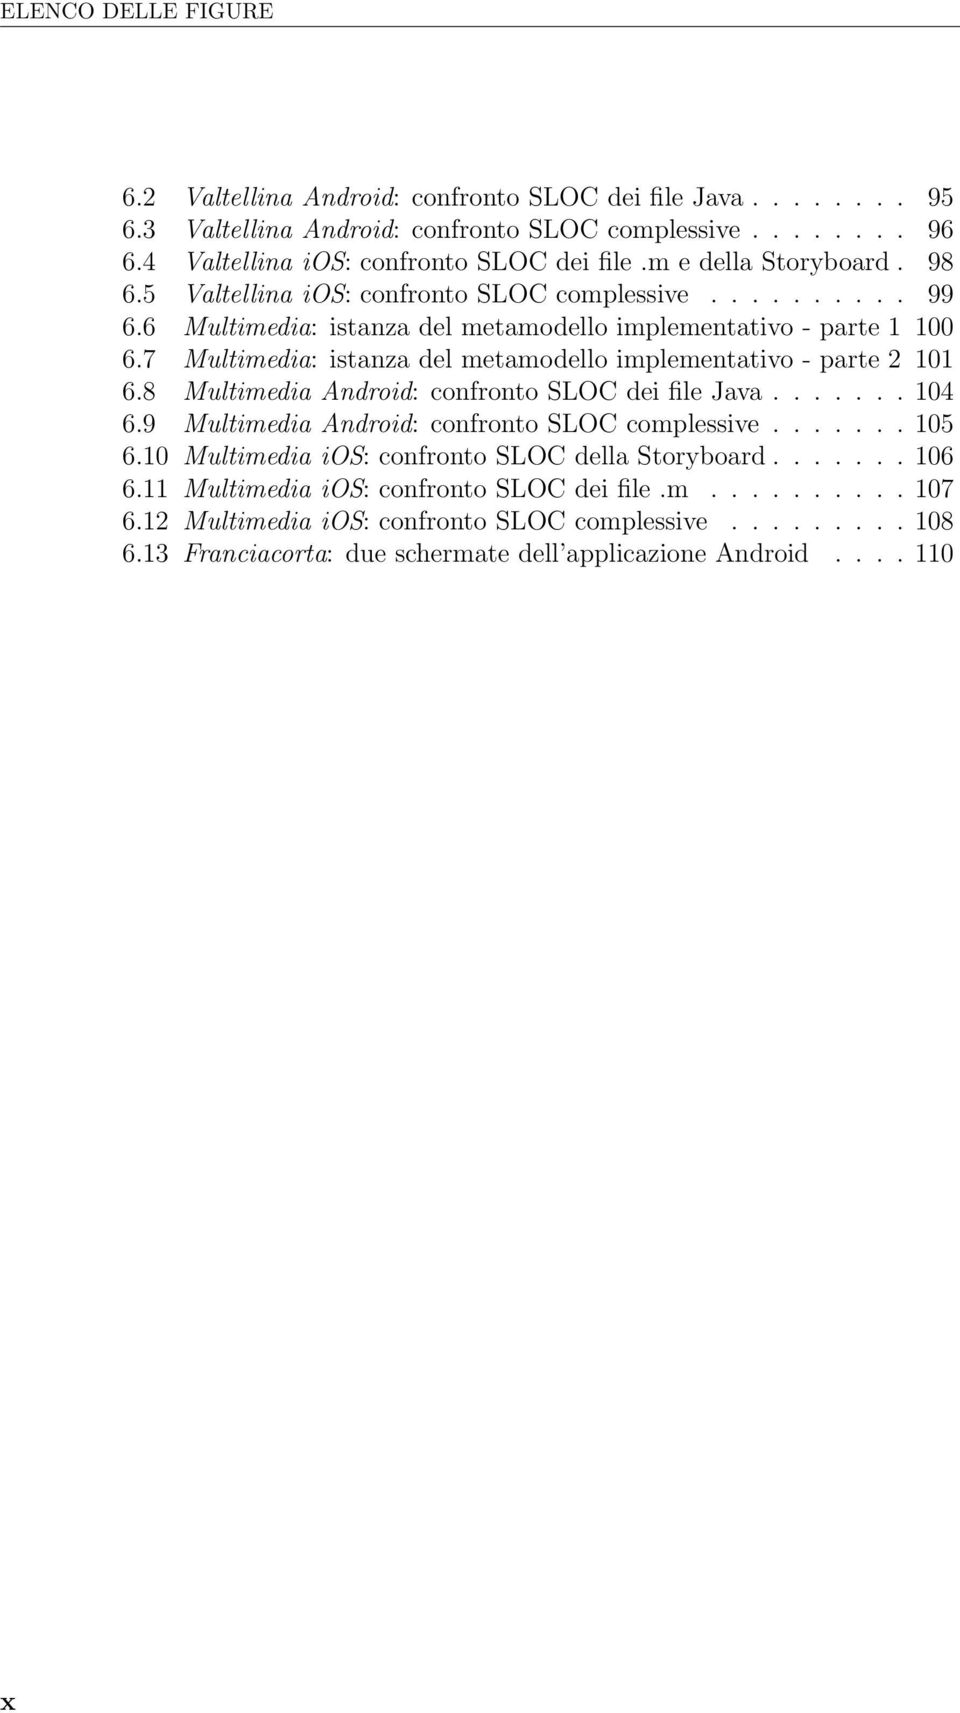 7 Multimedia: istanza del metamodello implementativo - parte 2 101 6.8 Multimedia Android: confronto SLOC dei file Java....... 104 6.9 Multimedia Android: confronto SLOC complessive....... 105 6.